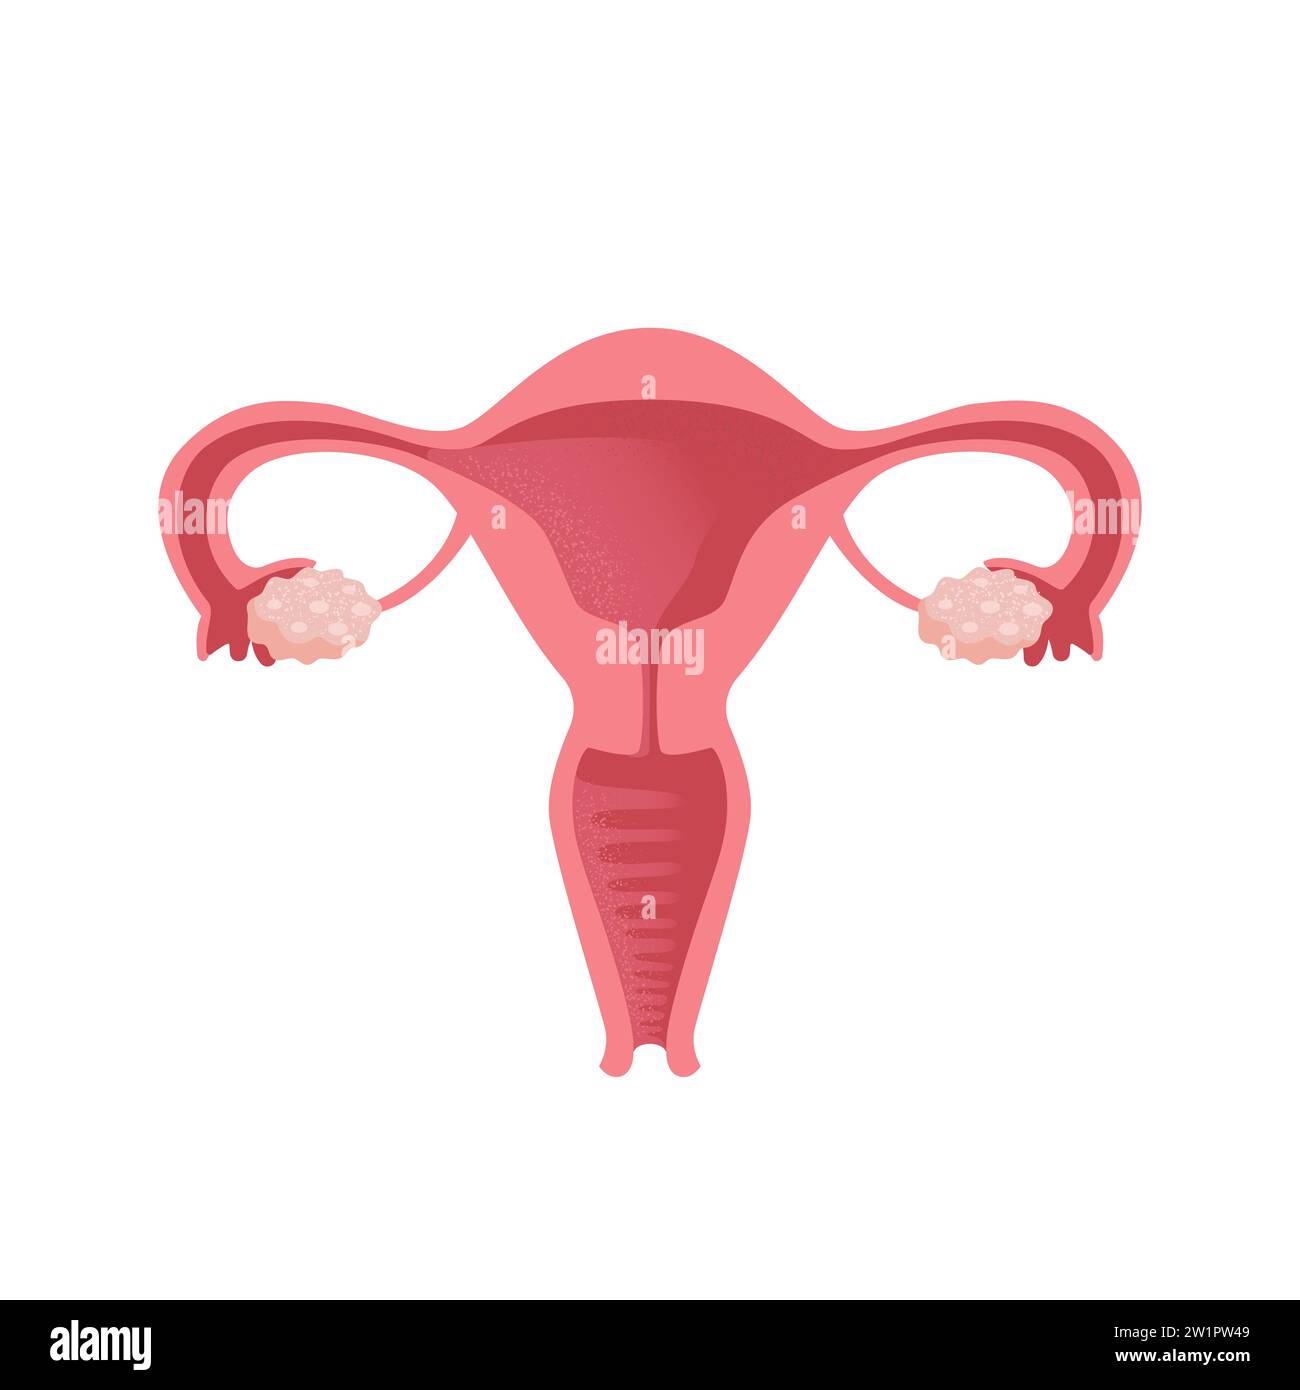 Utero. Salute delle donne. Sistema riproduttivo femminile, ciclo. Anatomia umana. Diagramma della posizione degli organi dell'utero, della cervice, delle ovaie, della fallopia Illustrazione Vettoriale